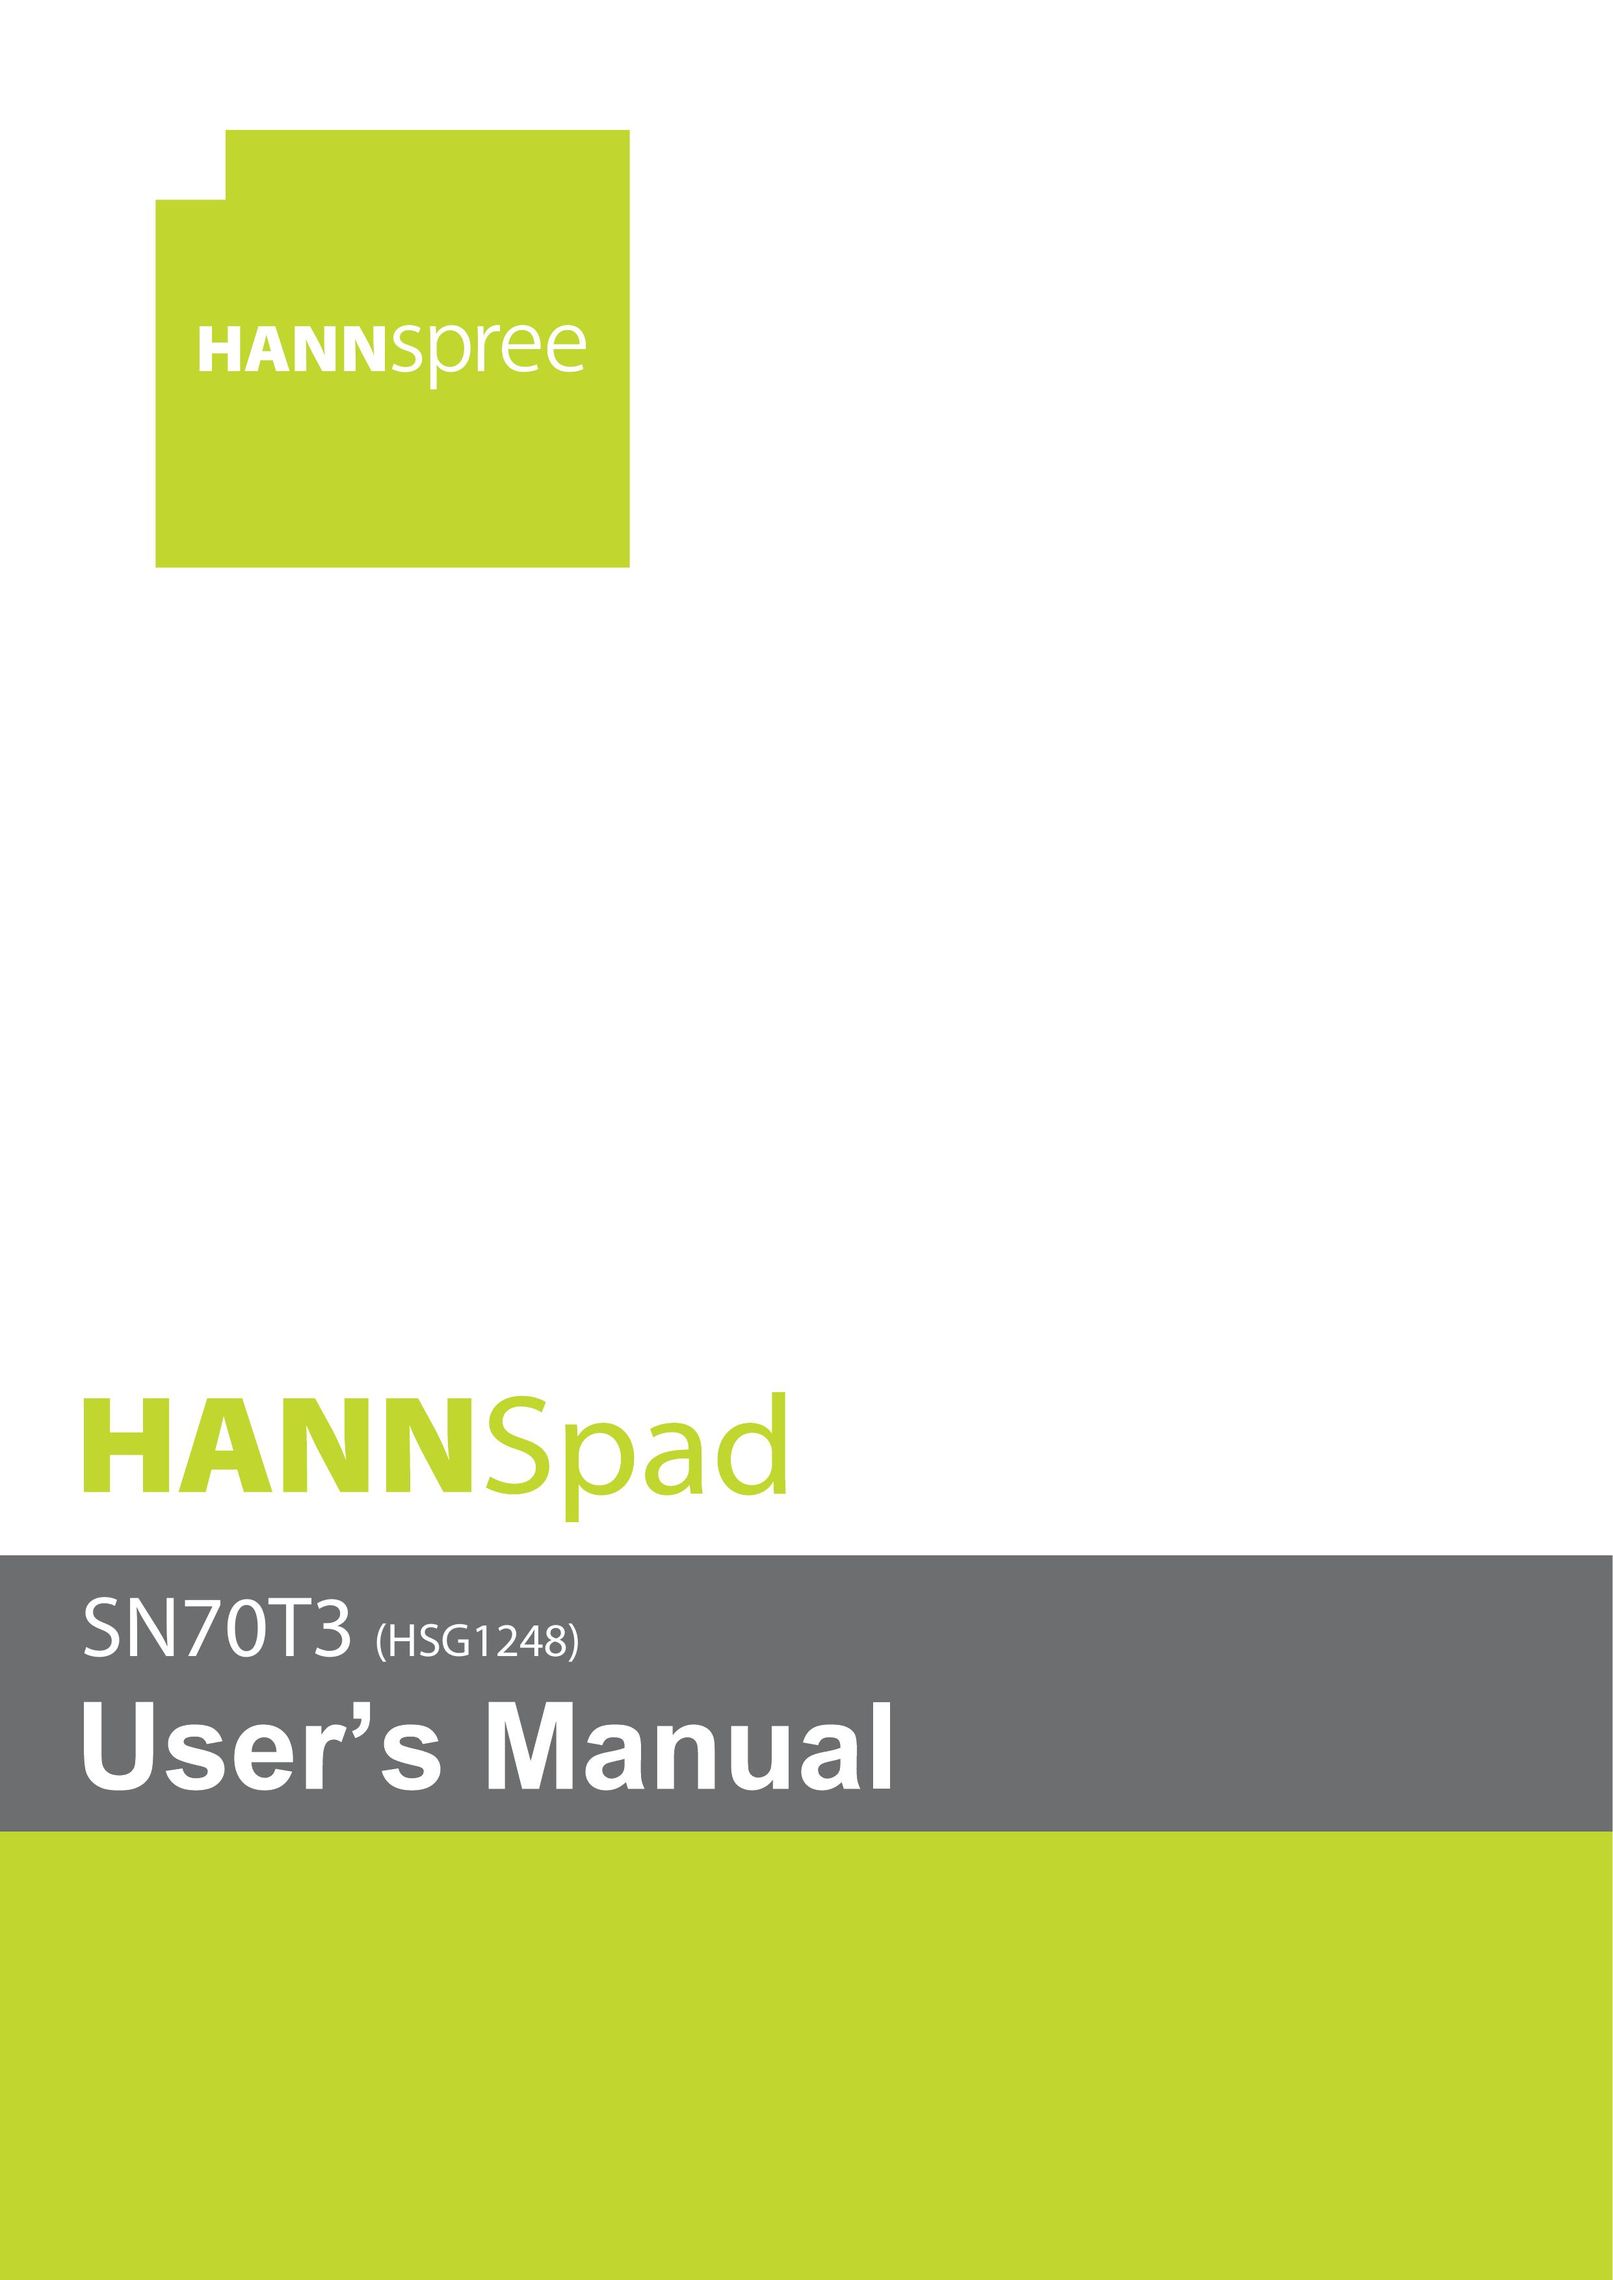 HANNspree SN70T3 Tablet User Manual